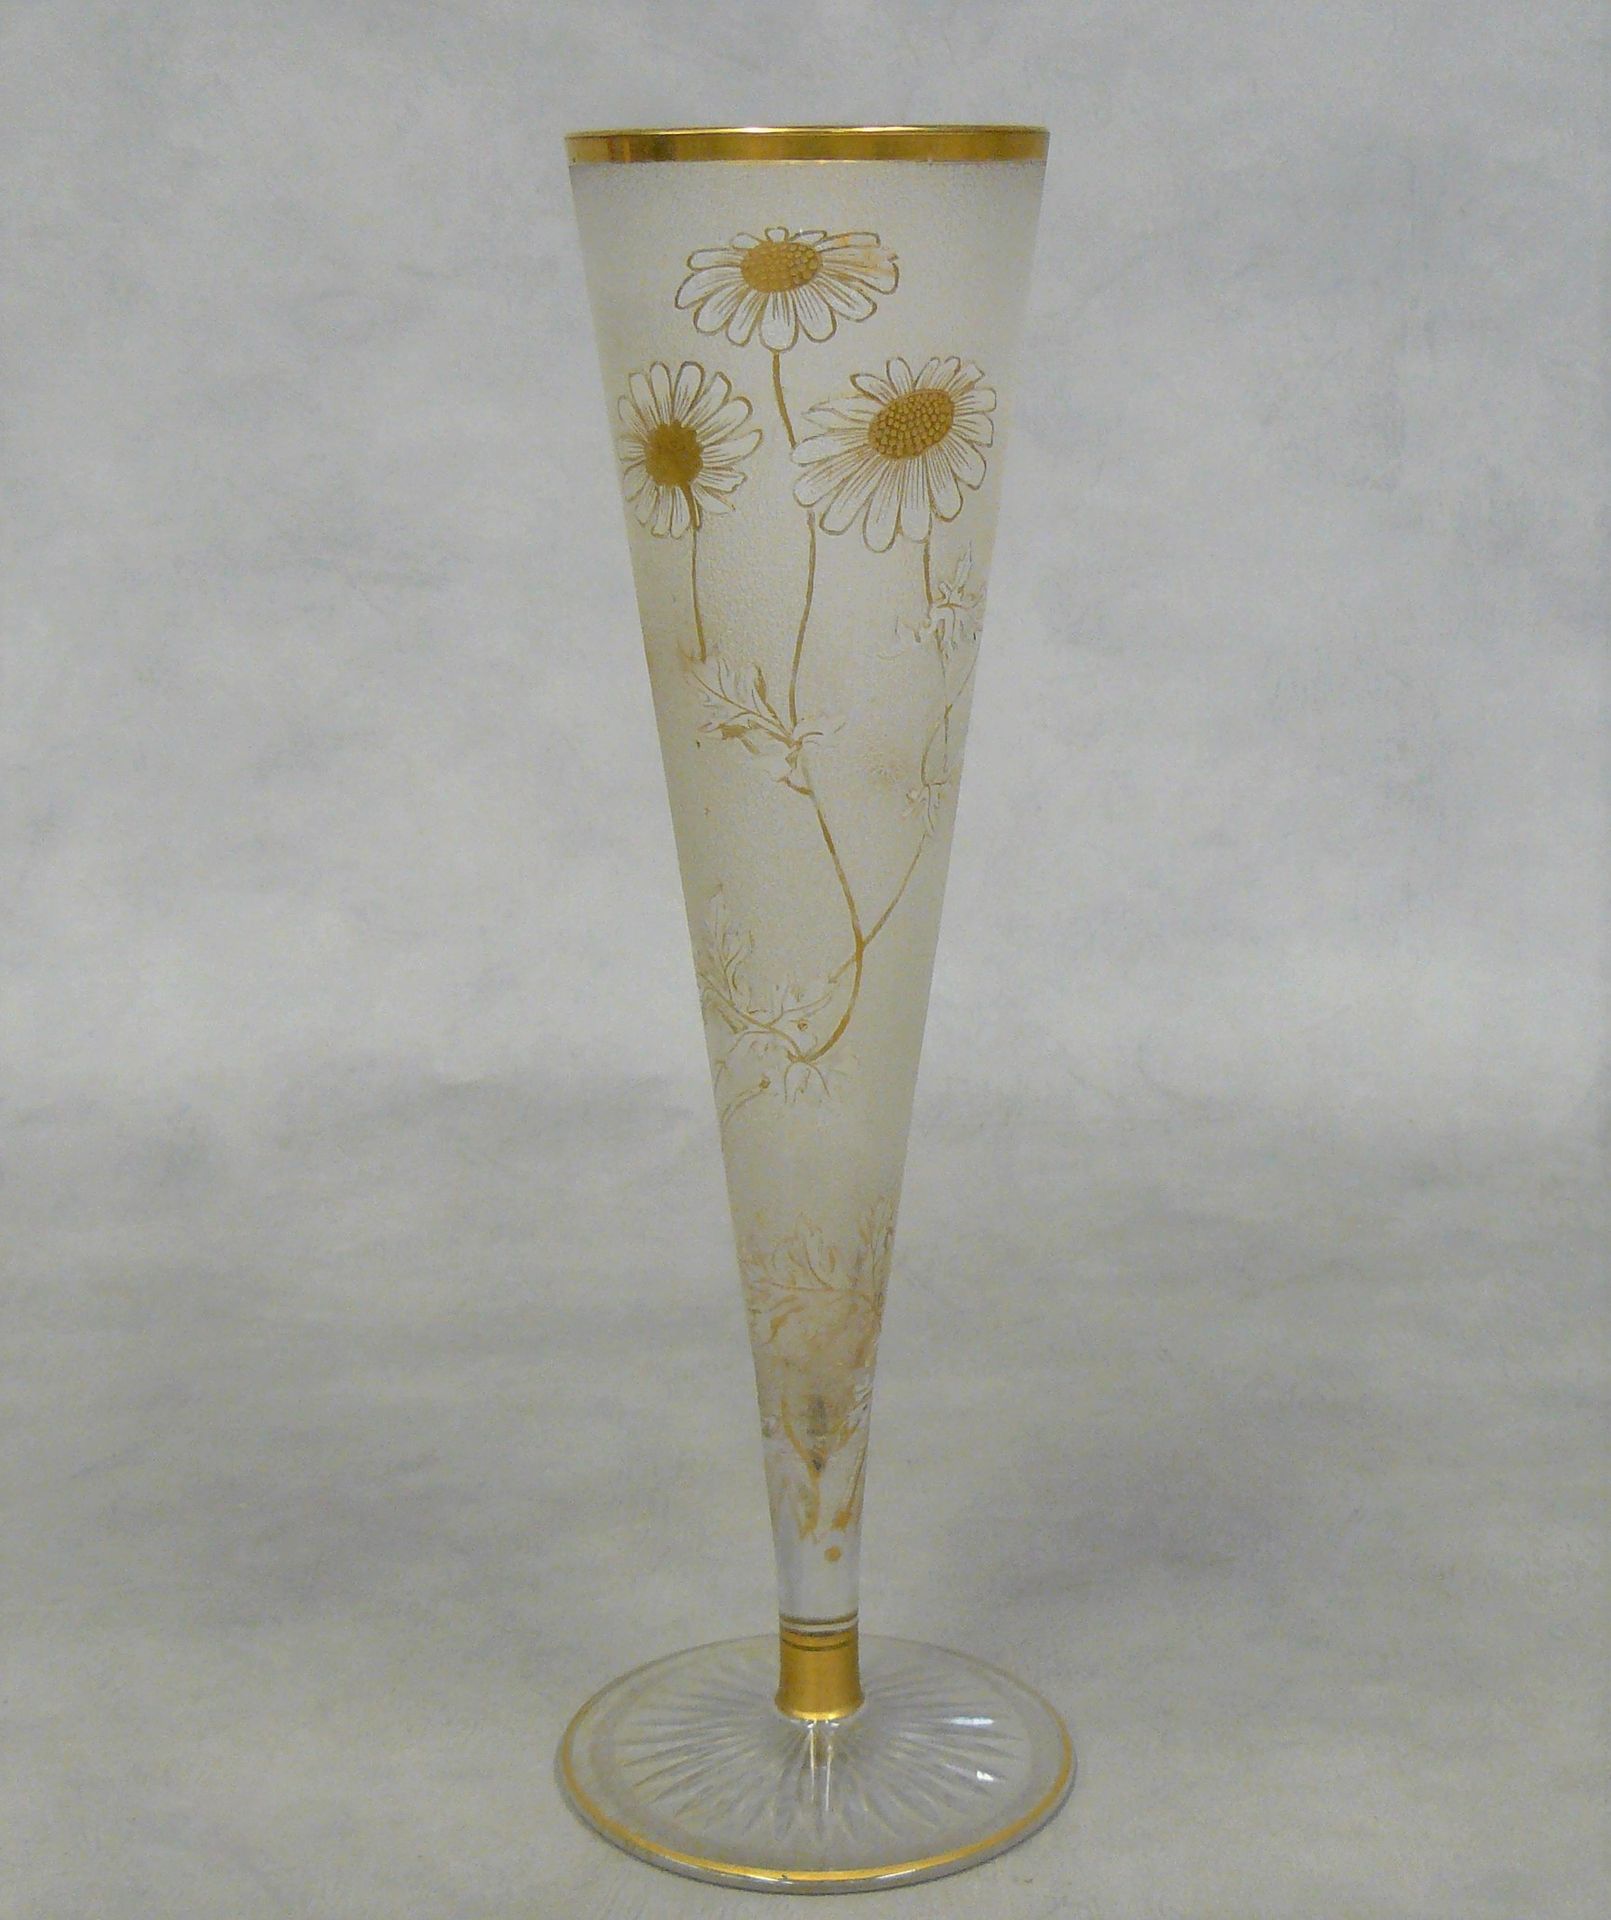 Null vaso conico in vetro satinato con decorazione floreale in oro - H 35 cm